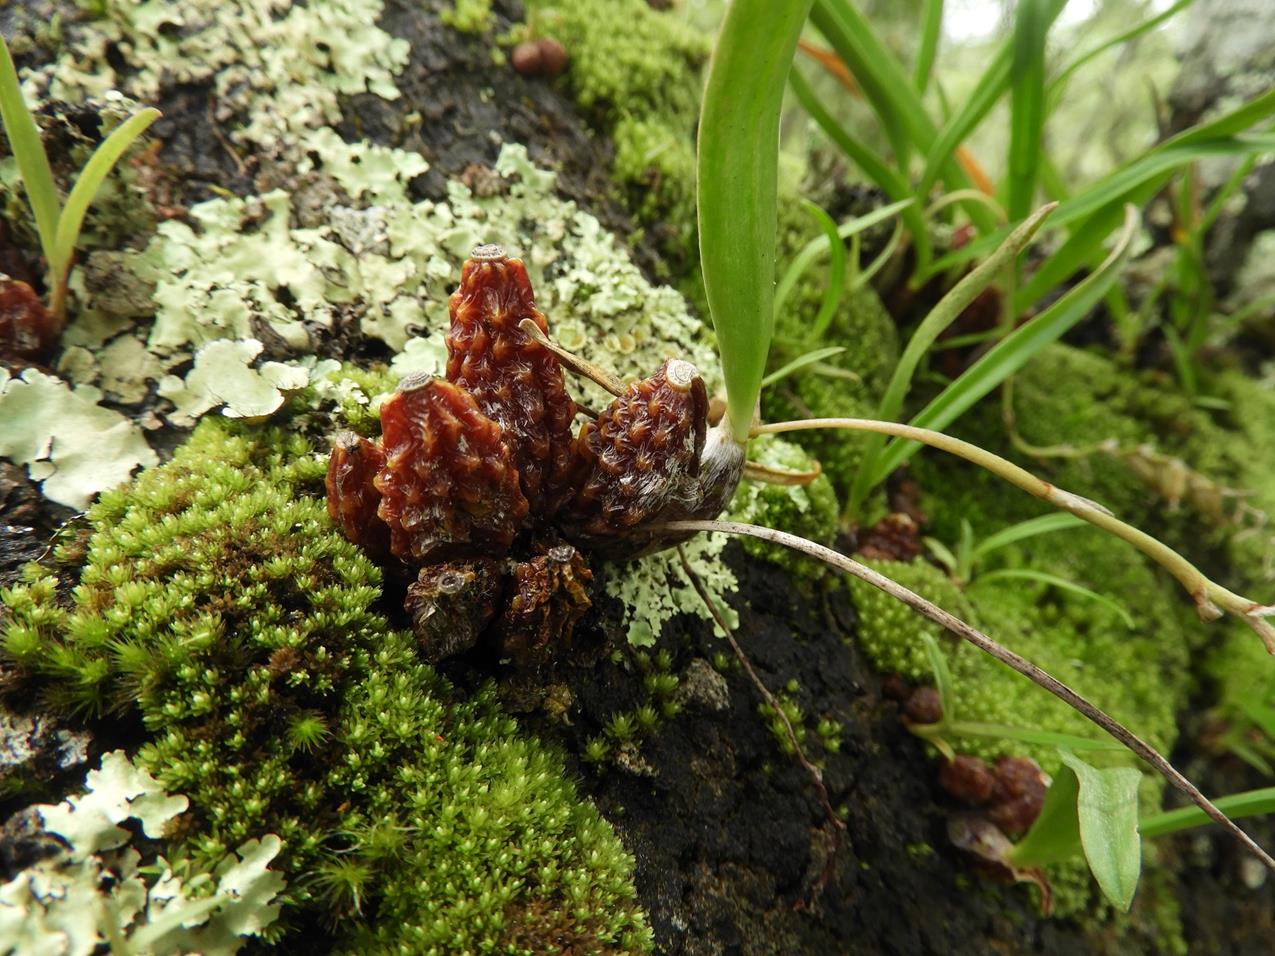 Bulbophyllum rugosibulbum